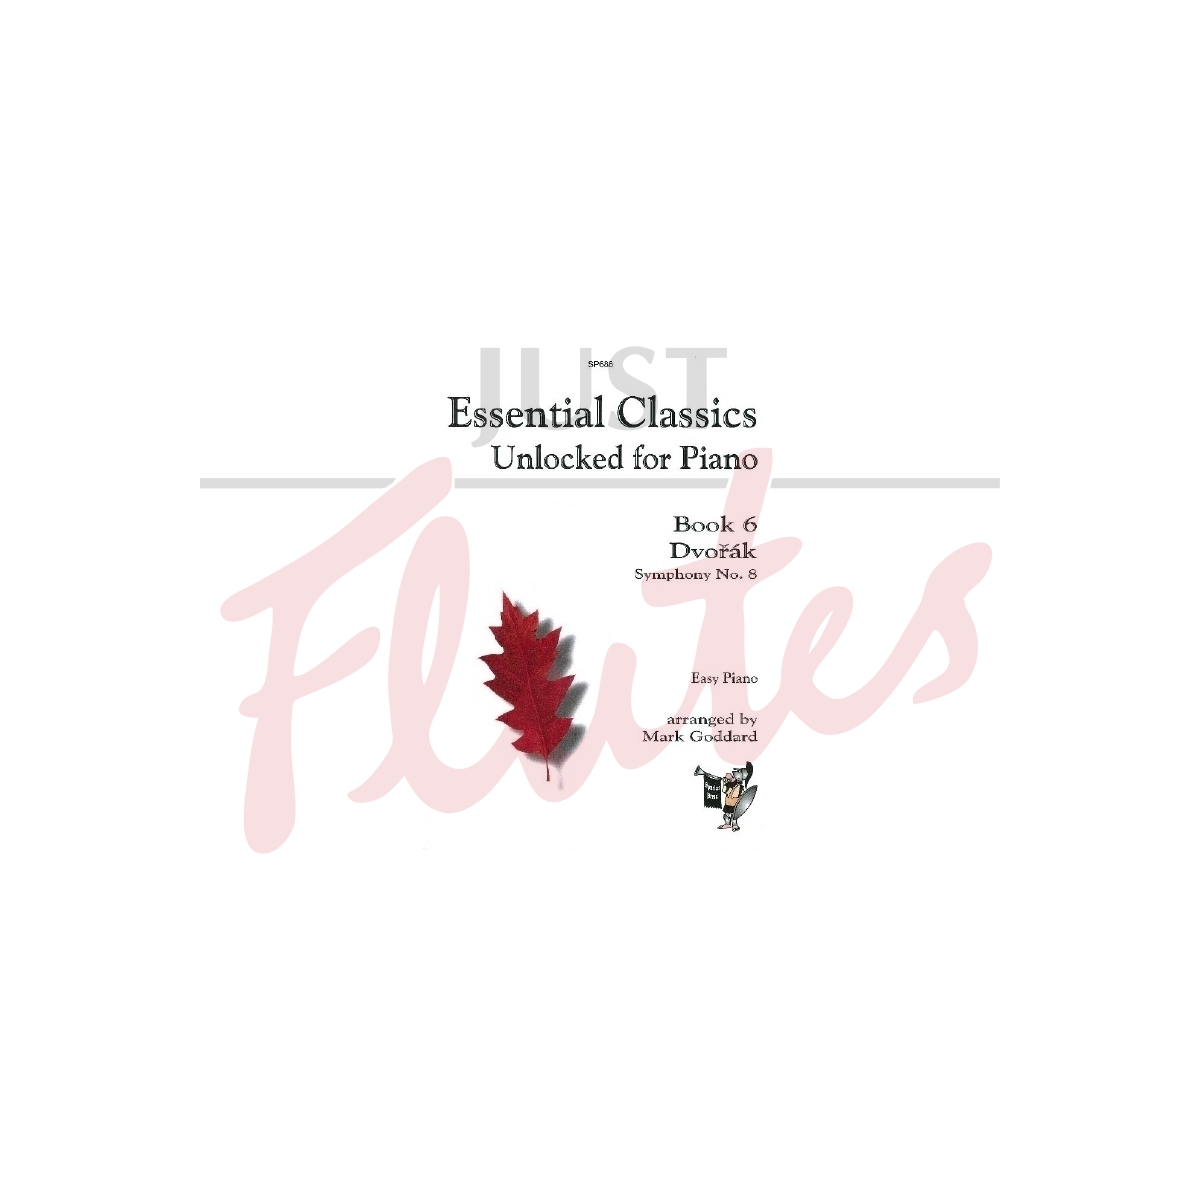 Essential Classics Unlocked for Piano: Book 6, Dvorak Symphony No.8